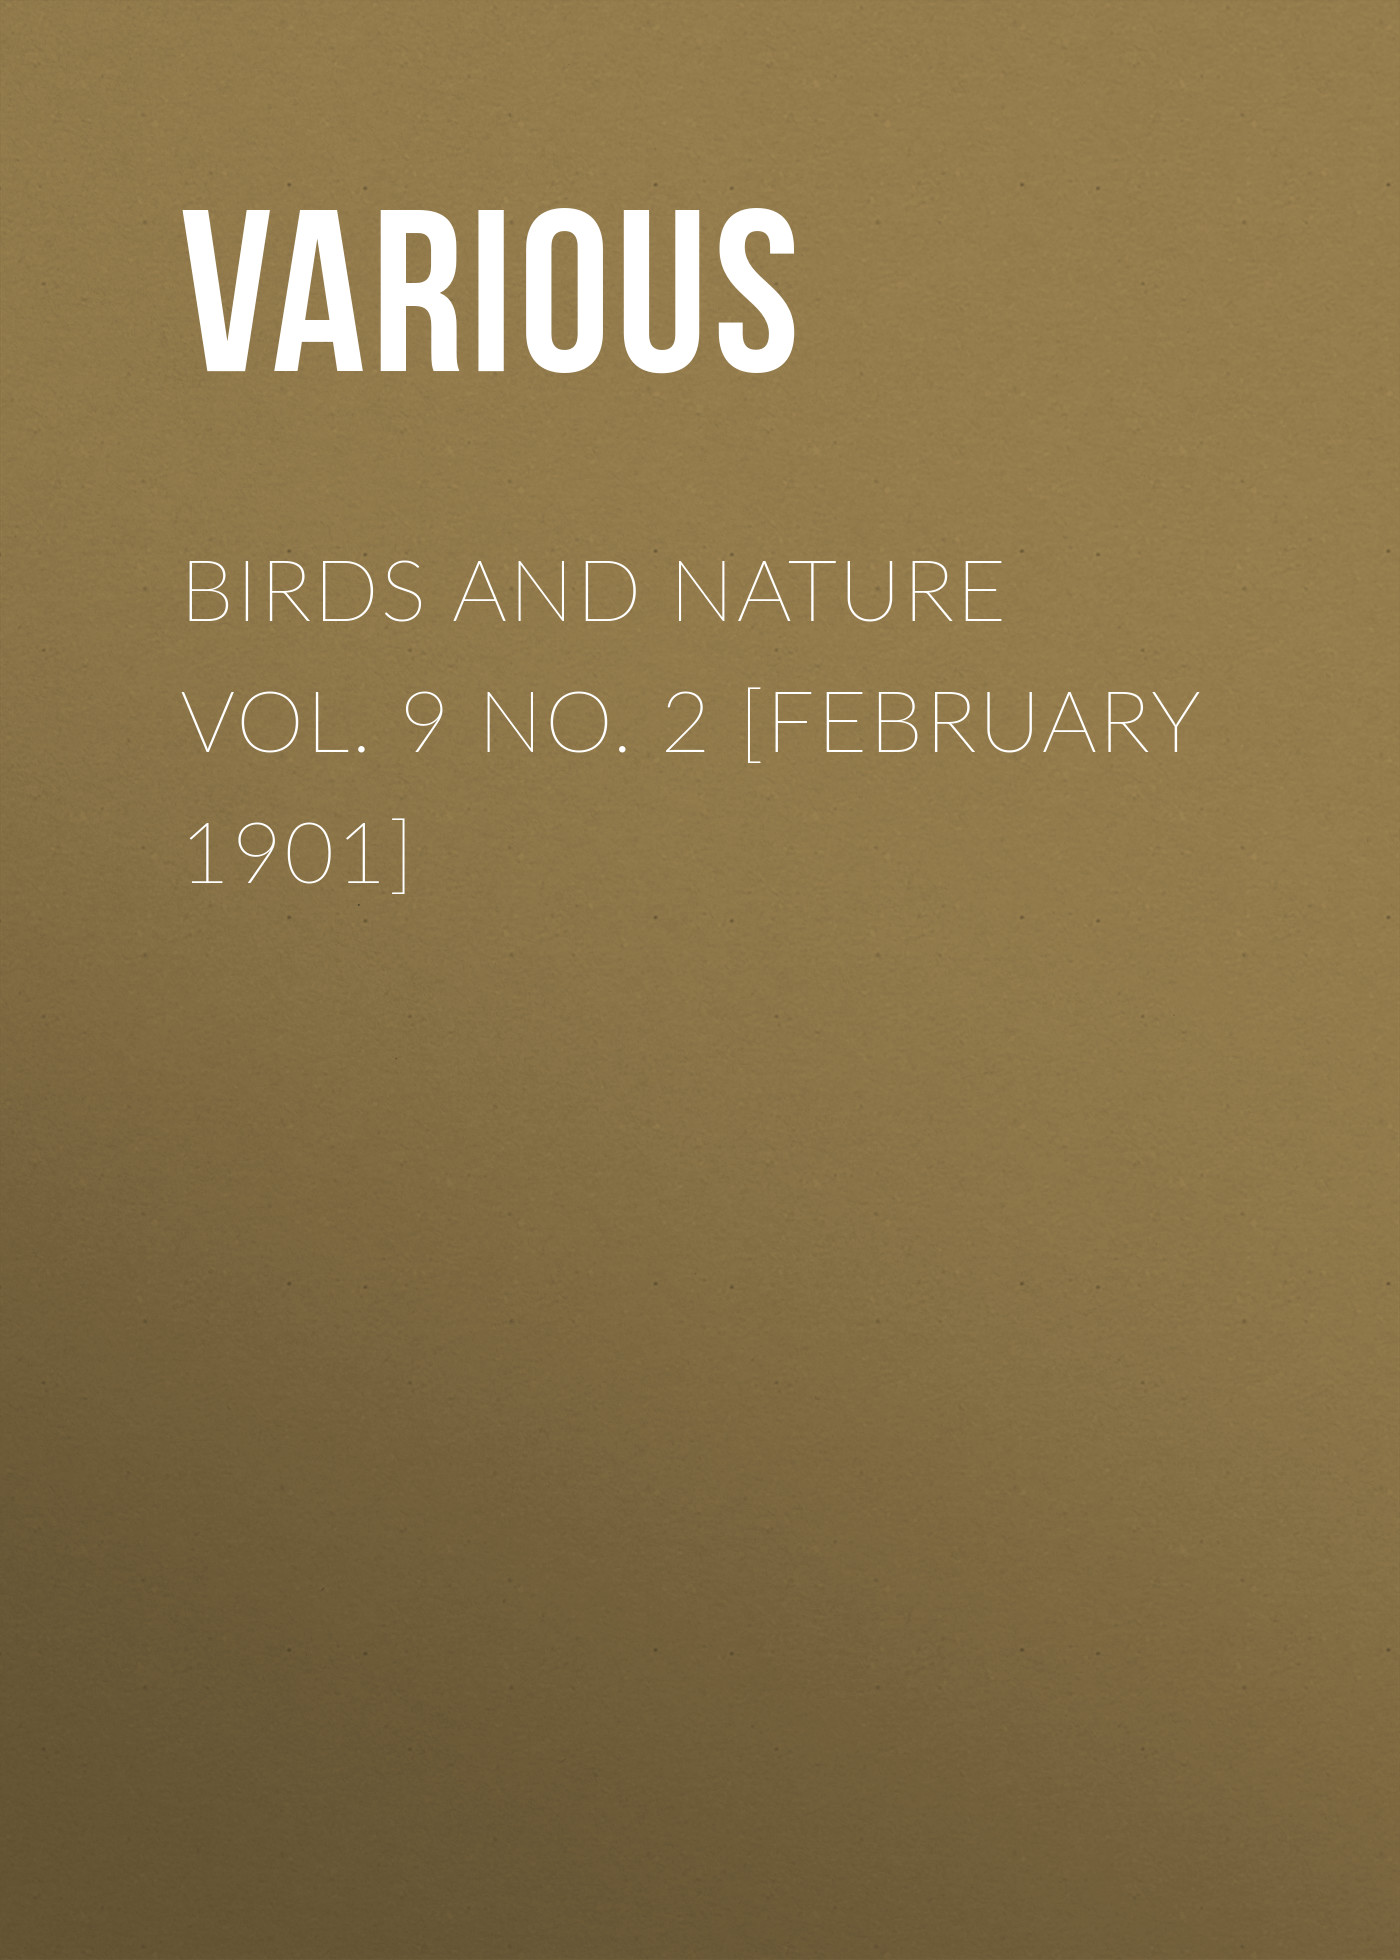 Книга Birds and Nature Vol. 9 No. 2 [February 1901] из серии , созданная  Various, может относится к жанру Журналы, Биология, Природа и животные, Зарубежная образовательная литература. Стоимость электронной книги Birds and Nature Vol. 9 No. 2 [February 1901] с идентификатором 25569151 составляет 0 руб.